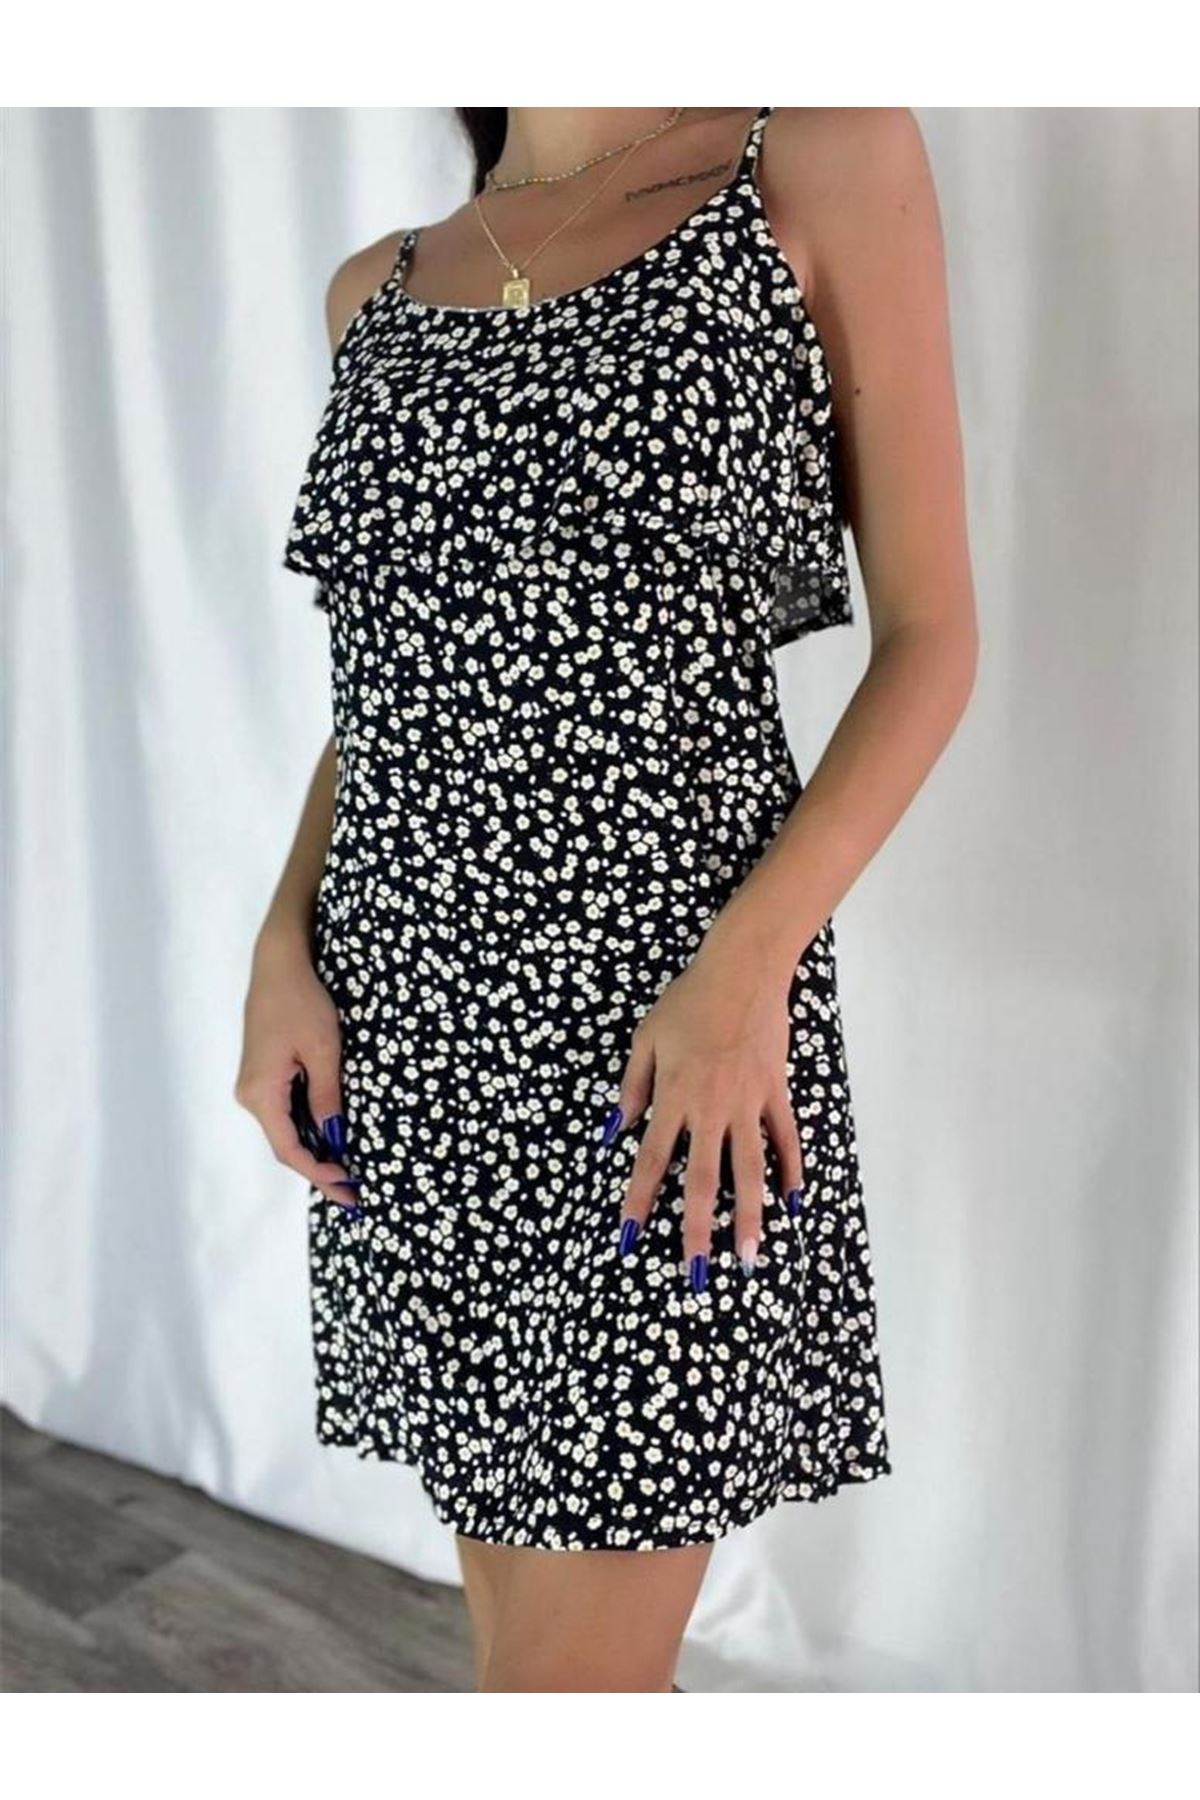 Kadın Siyah Askılı Kısa Pelerin Model Yazlık Dokuma Elbise 3D-2121